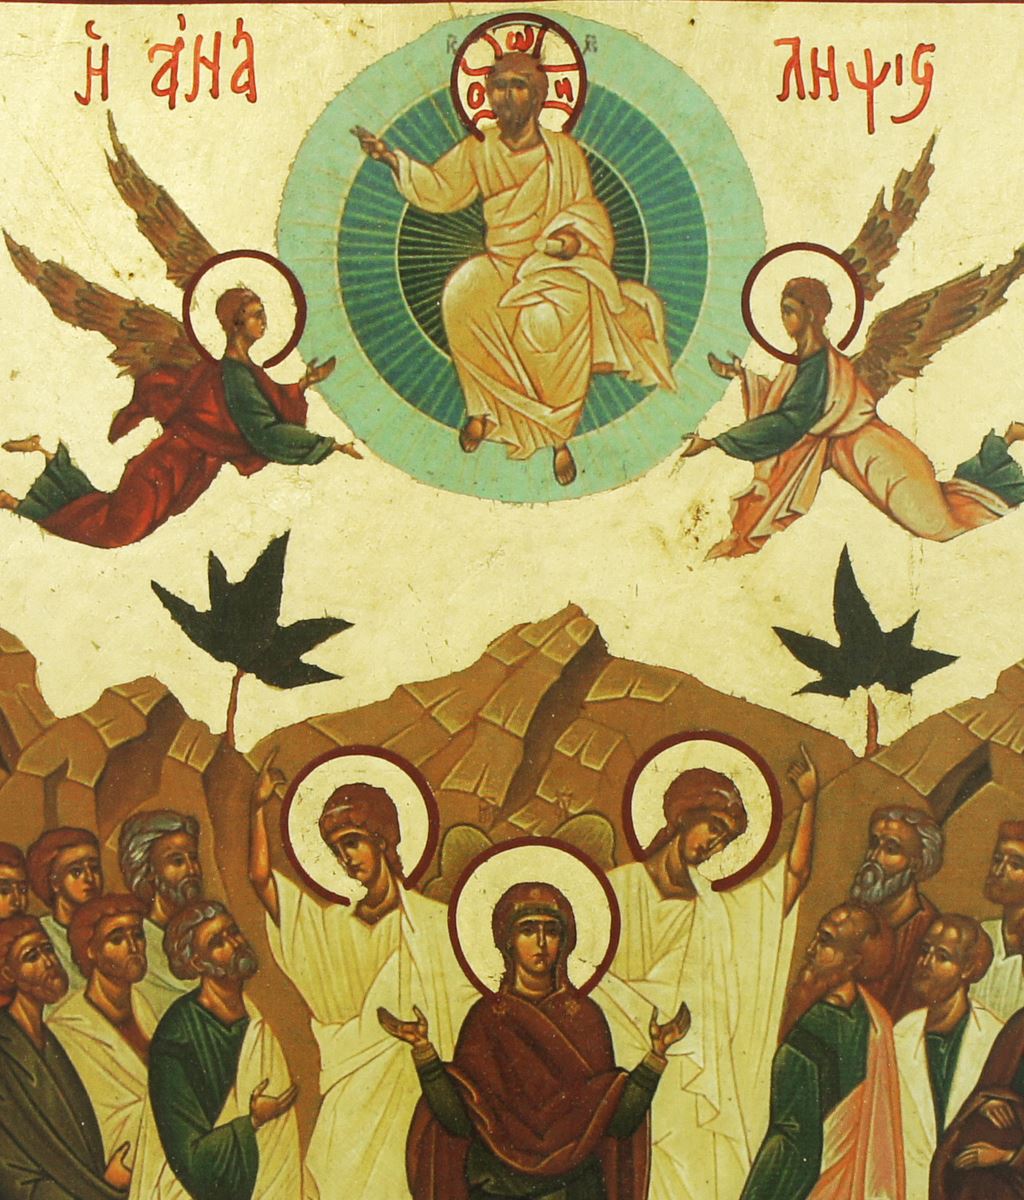 icona ascensione di cristo, icona in stile arte bizantina, icona su legno rifinita con aureole, scritte e bordure fatte a mano, produzione greca - 26 x 19,5 cm